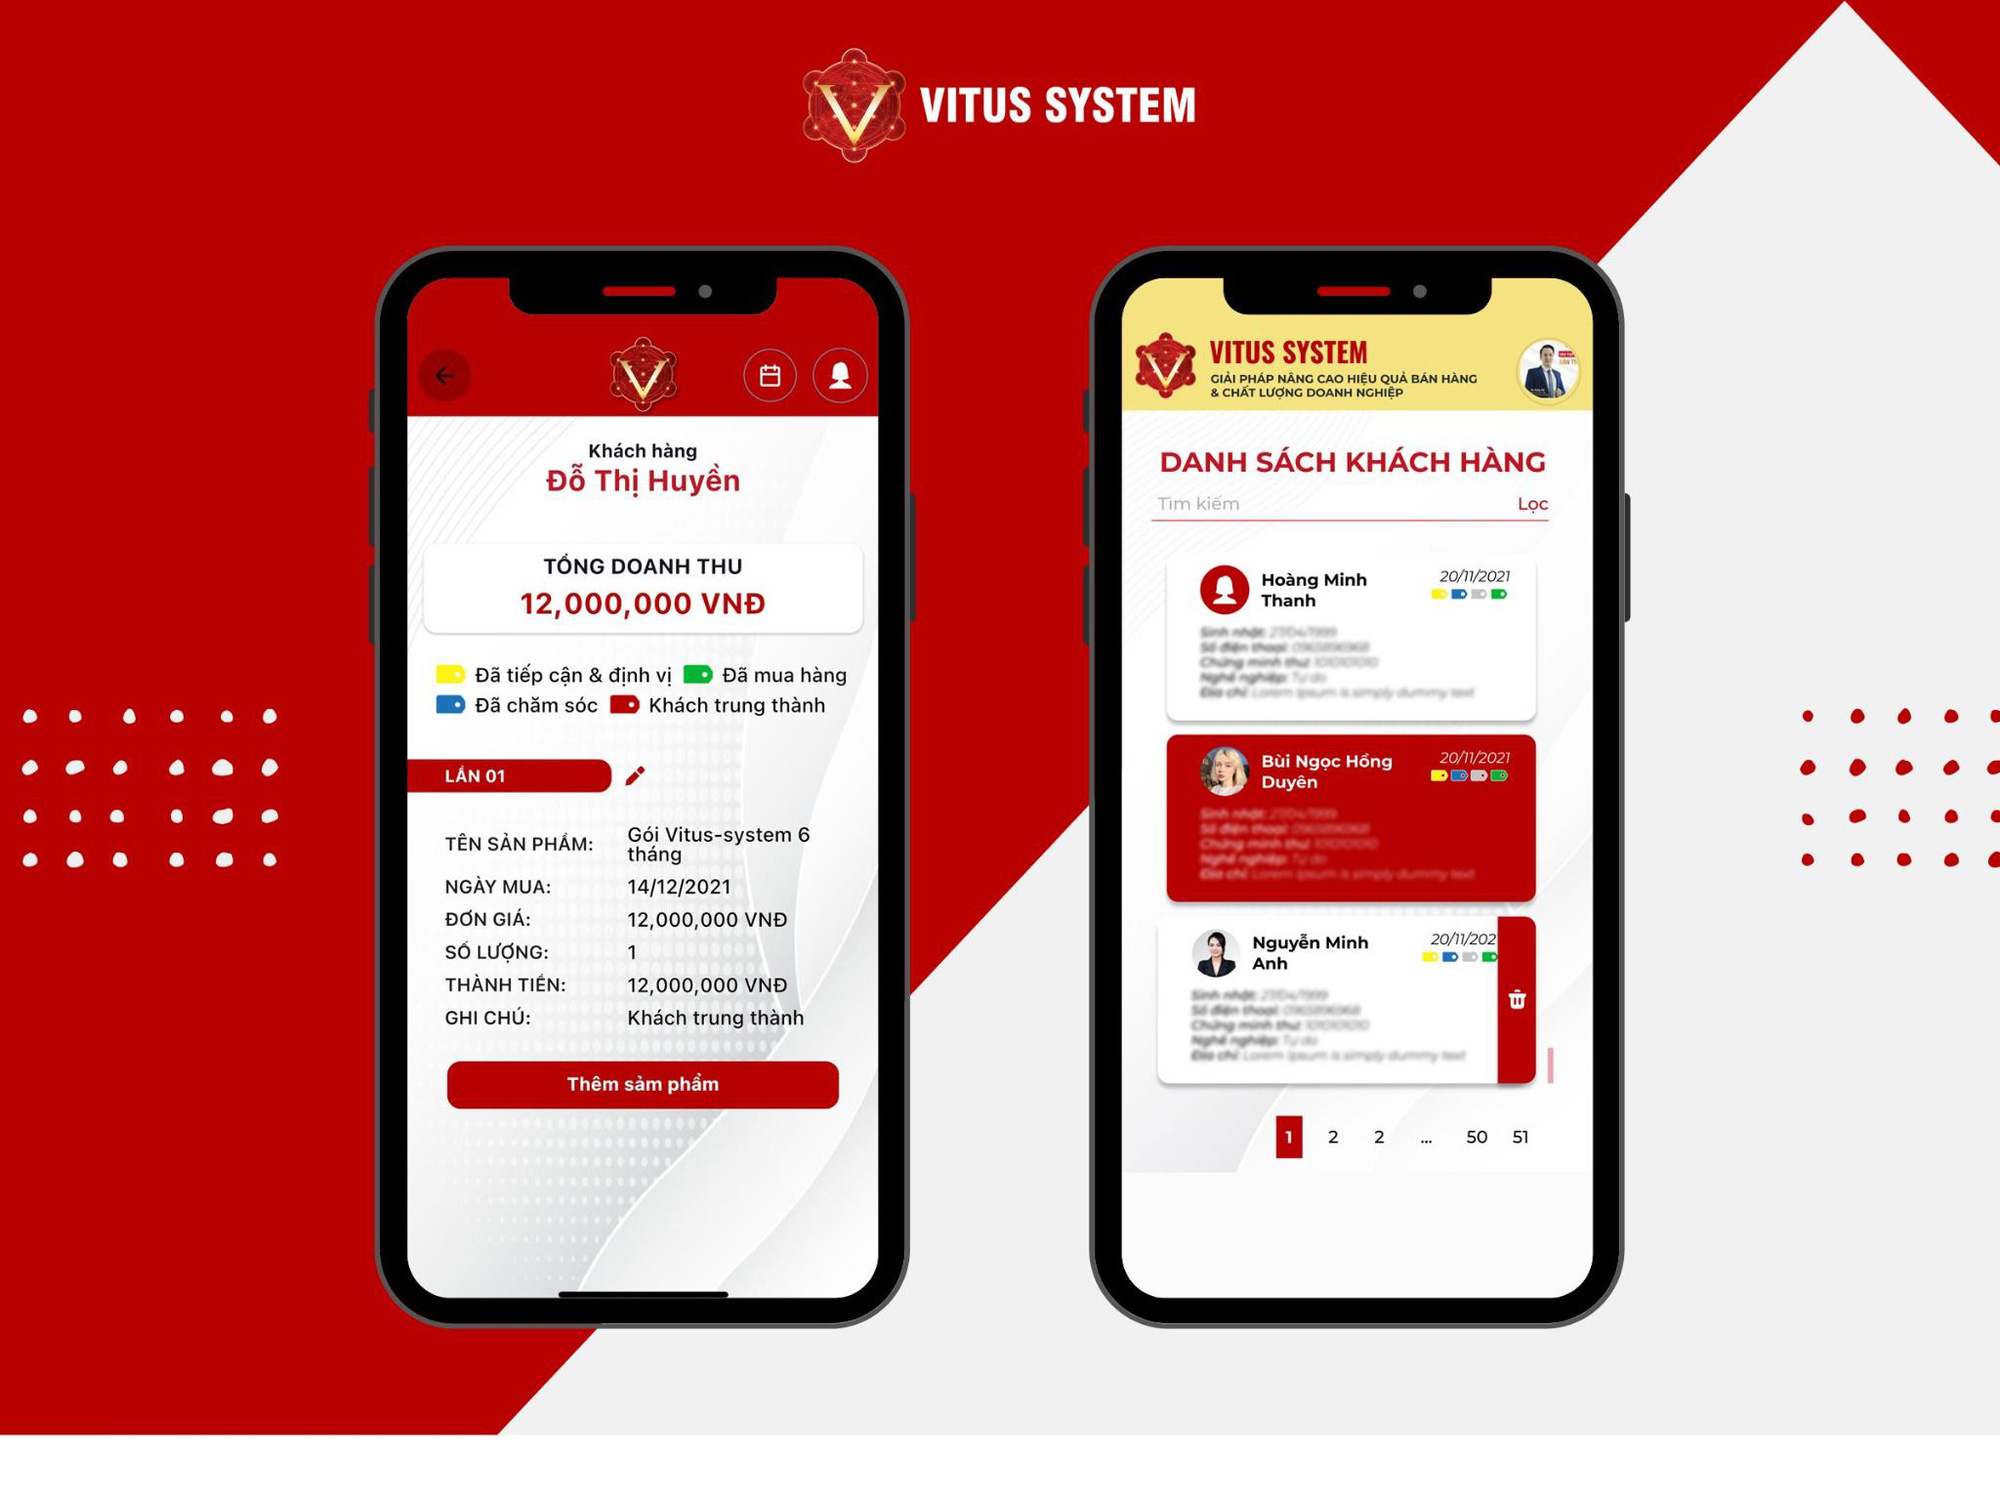 Trải nghiệm trực quan phần mềm Vitus System - Chìa khóa bán hàng cho mọi Seller - Ảnh 6.